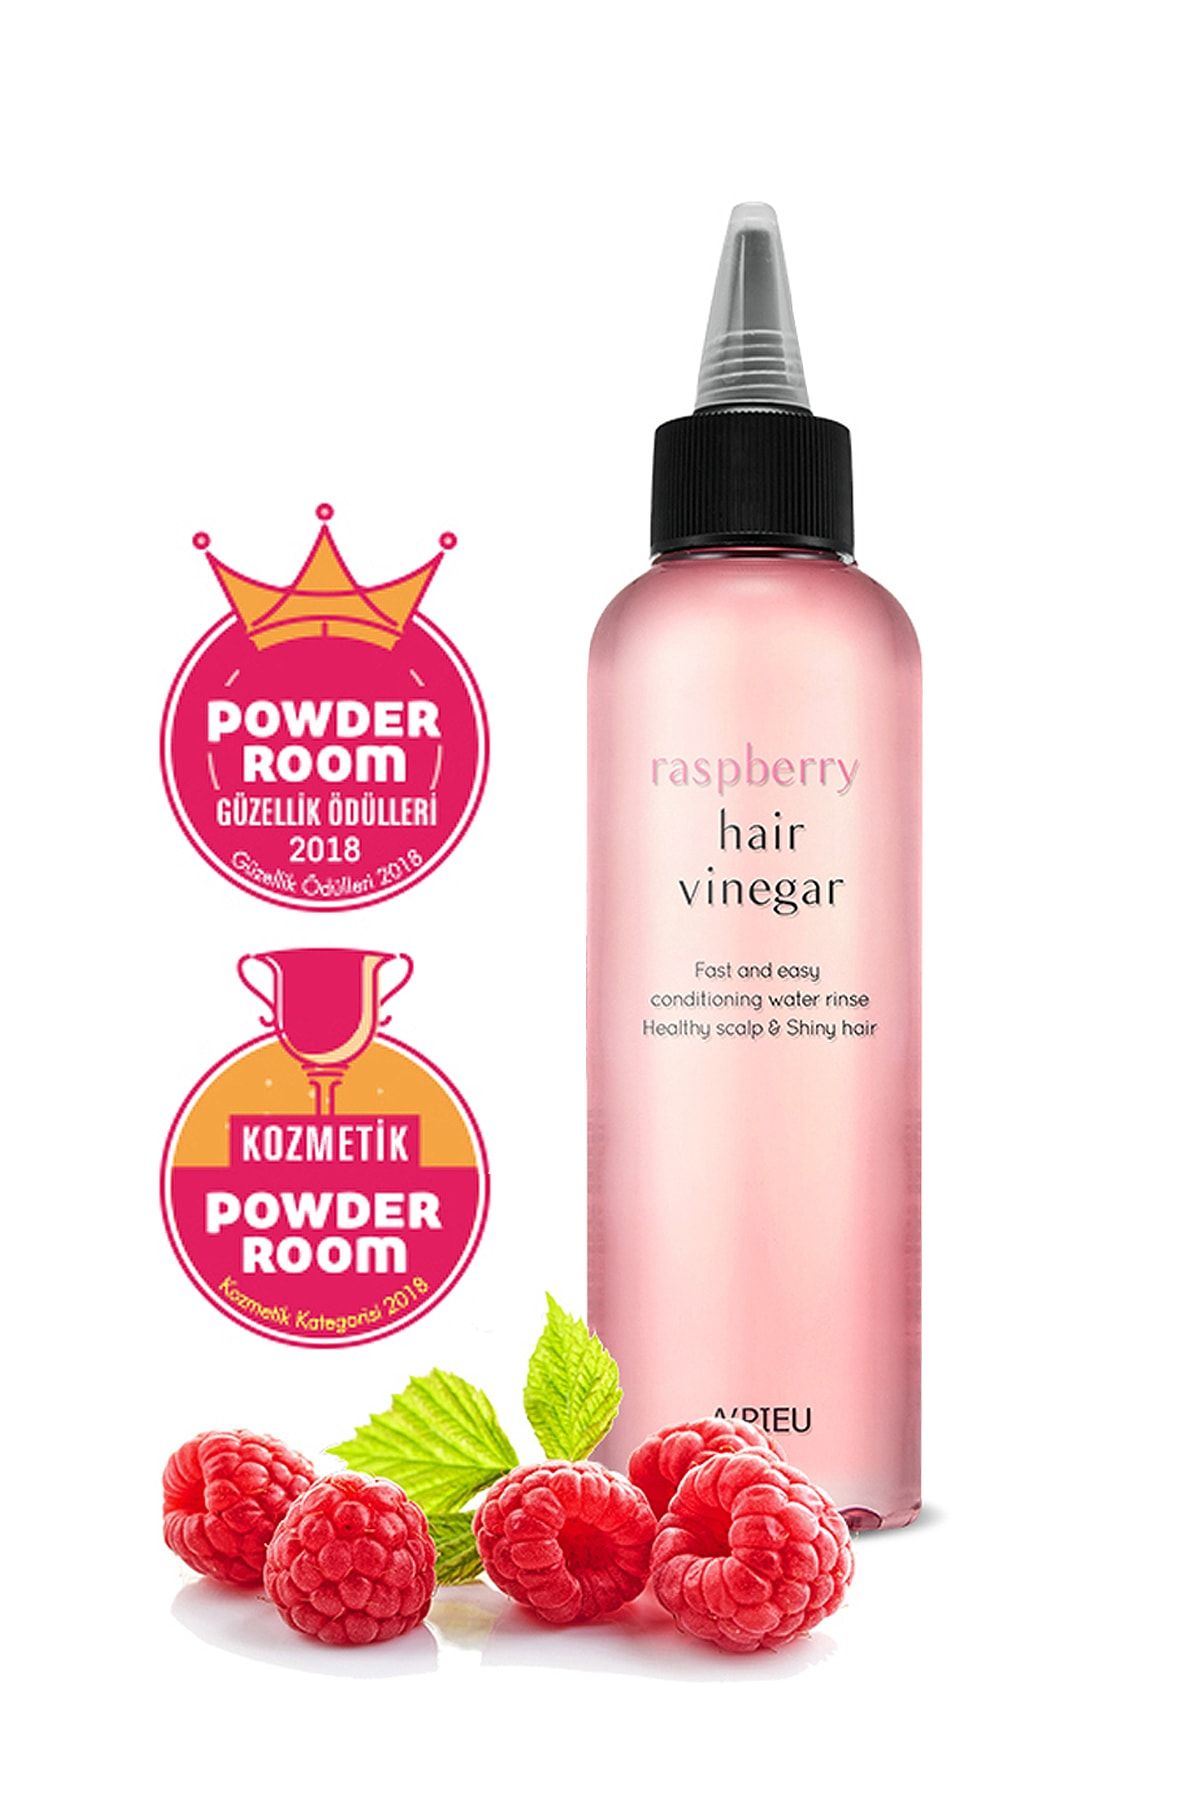 Missha Saçlara Parlak Görünüm Veren  Besleyici Ahududu Saç Sirkesi 200ml APieu Raspberry Hair Vinegar